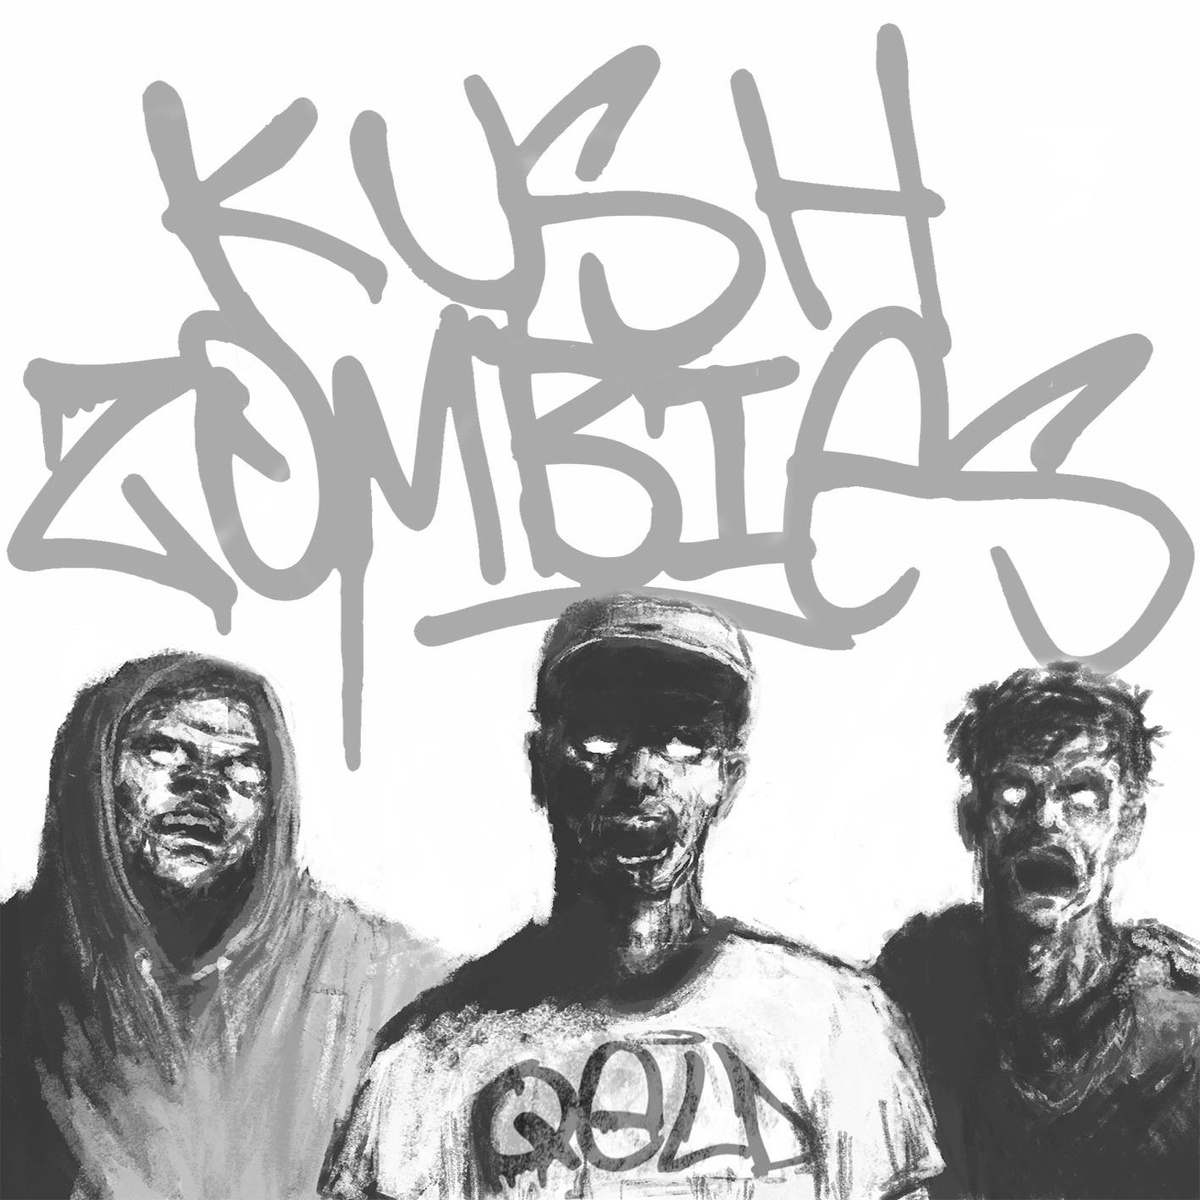 Kush Zombies